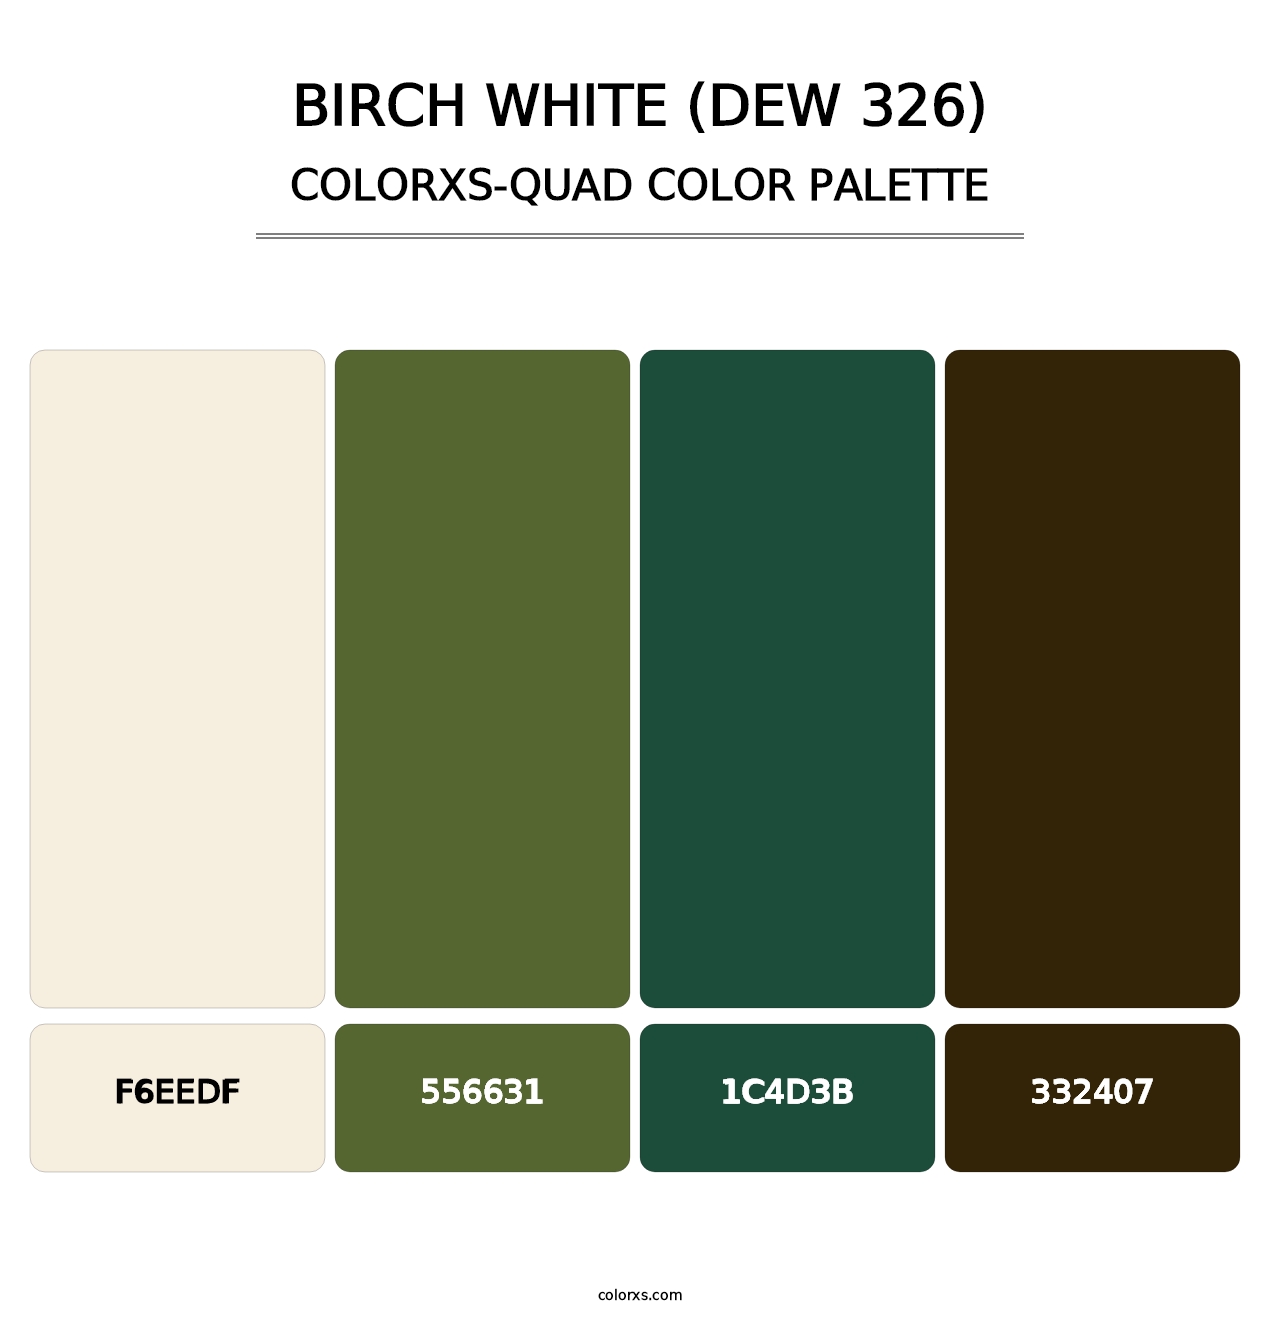 Birch White (DEW 326) - Colorxs Quad Palette